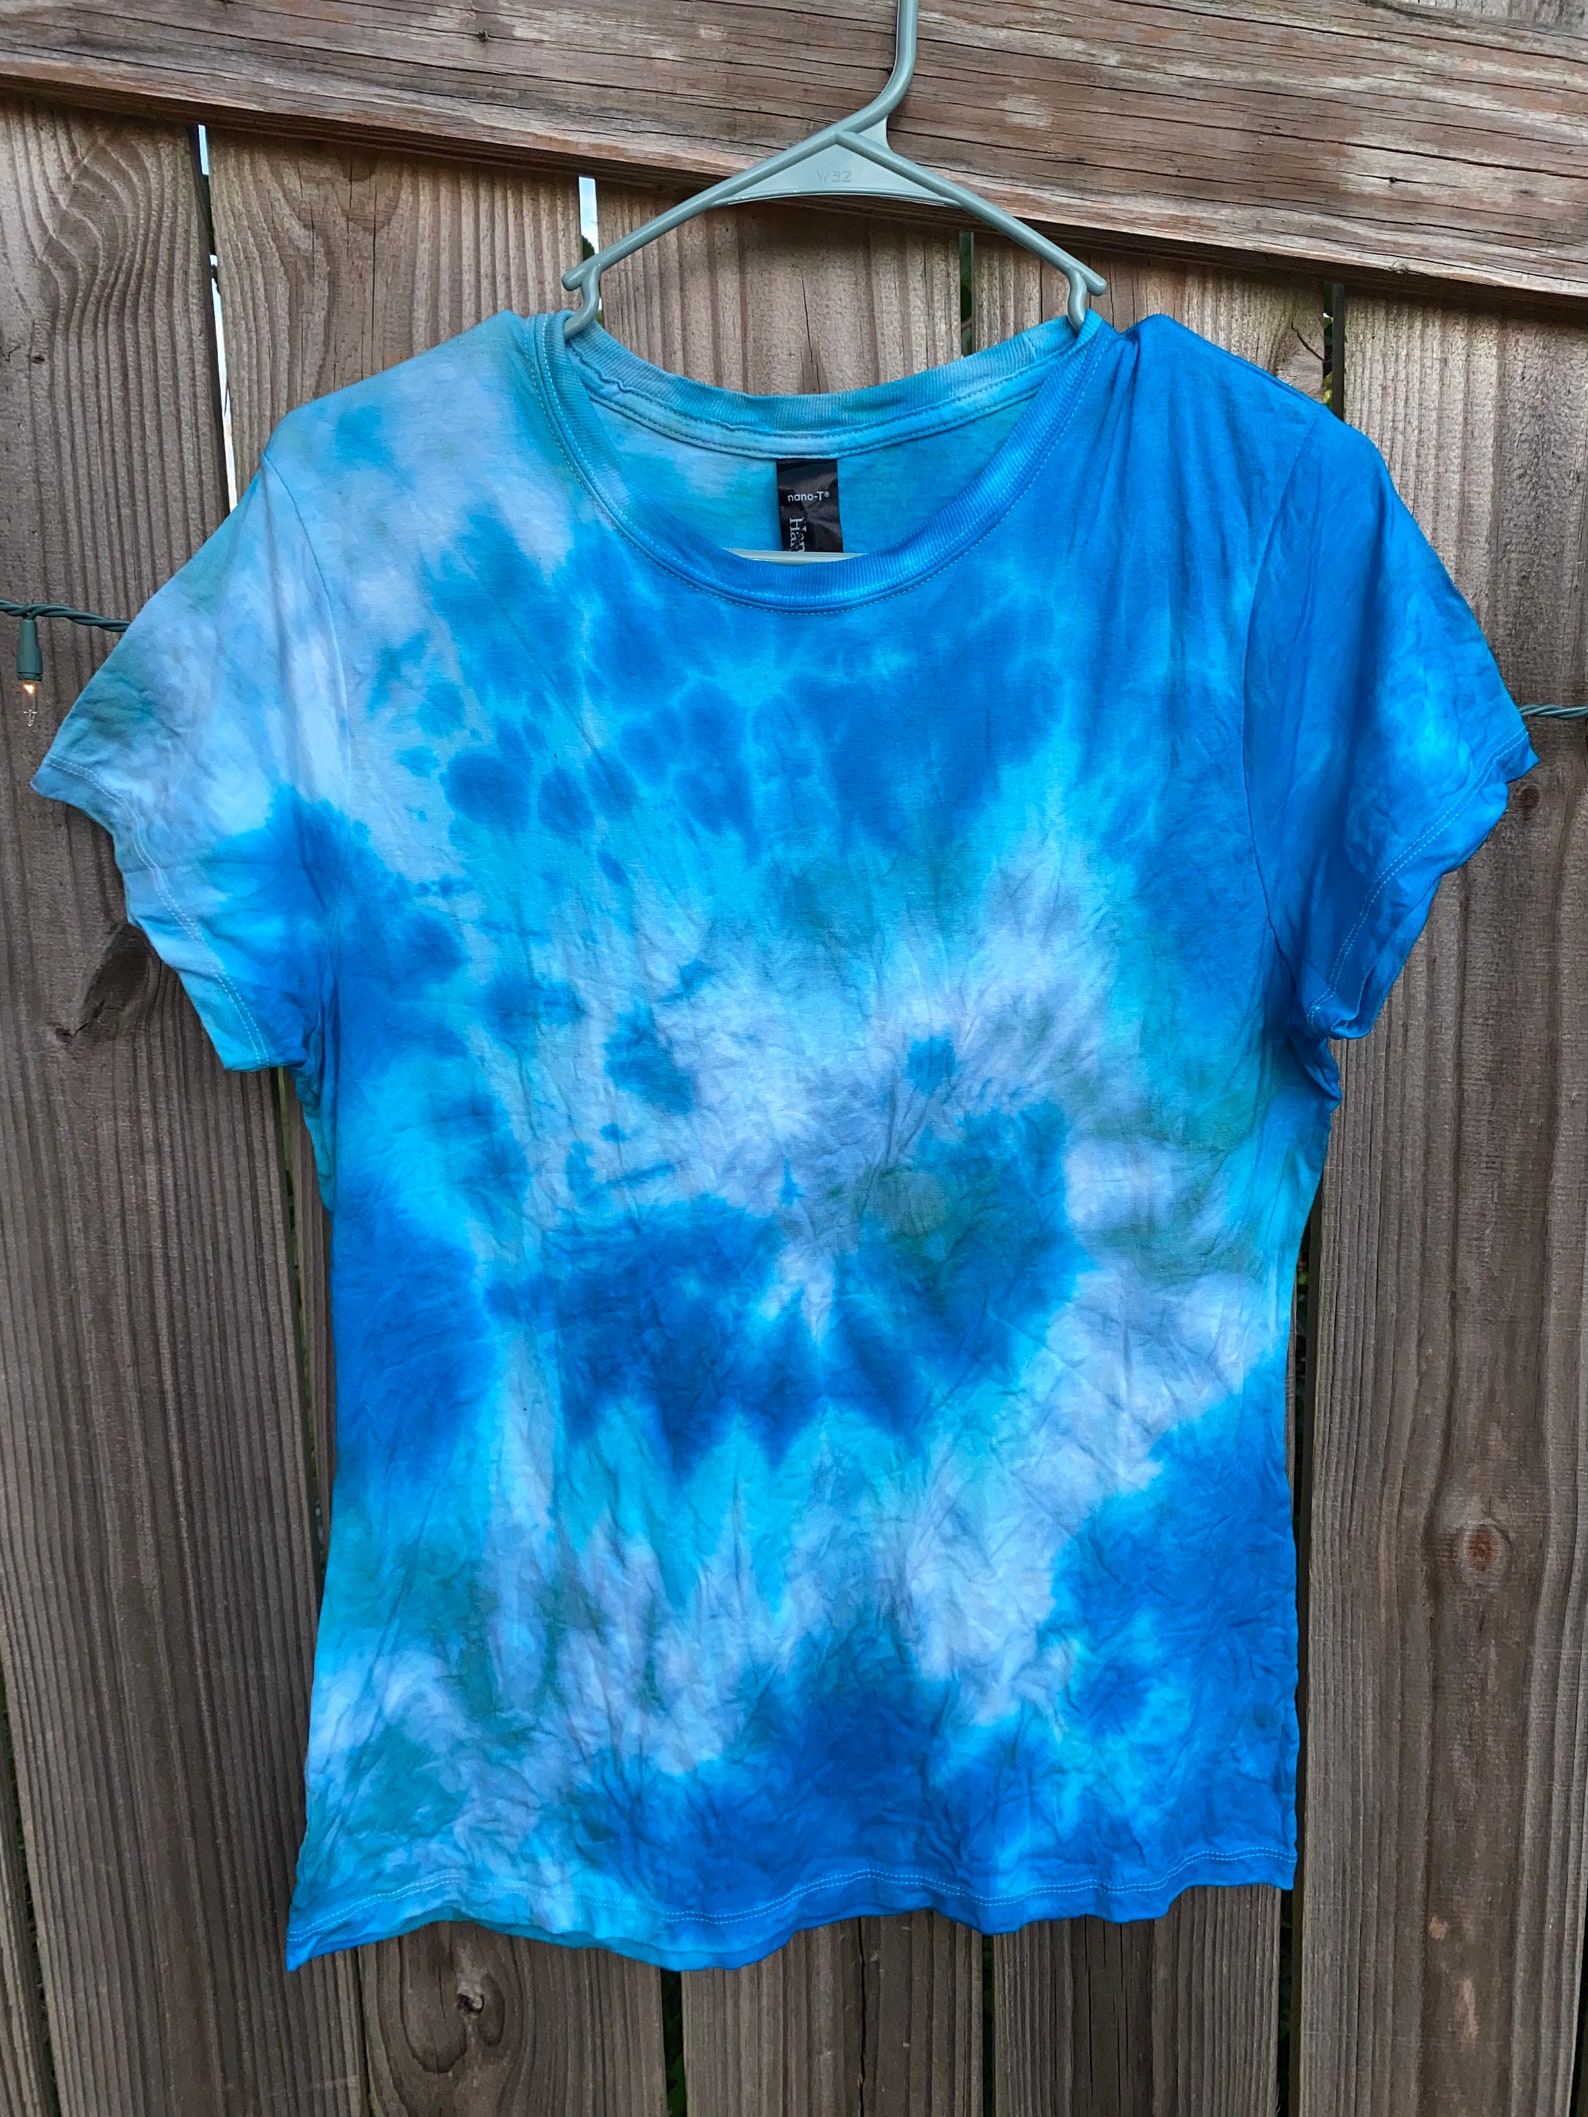 Blue Tye Dye Shirt - Etsy